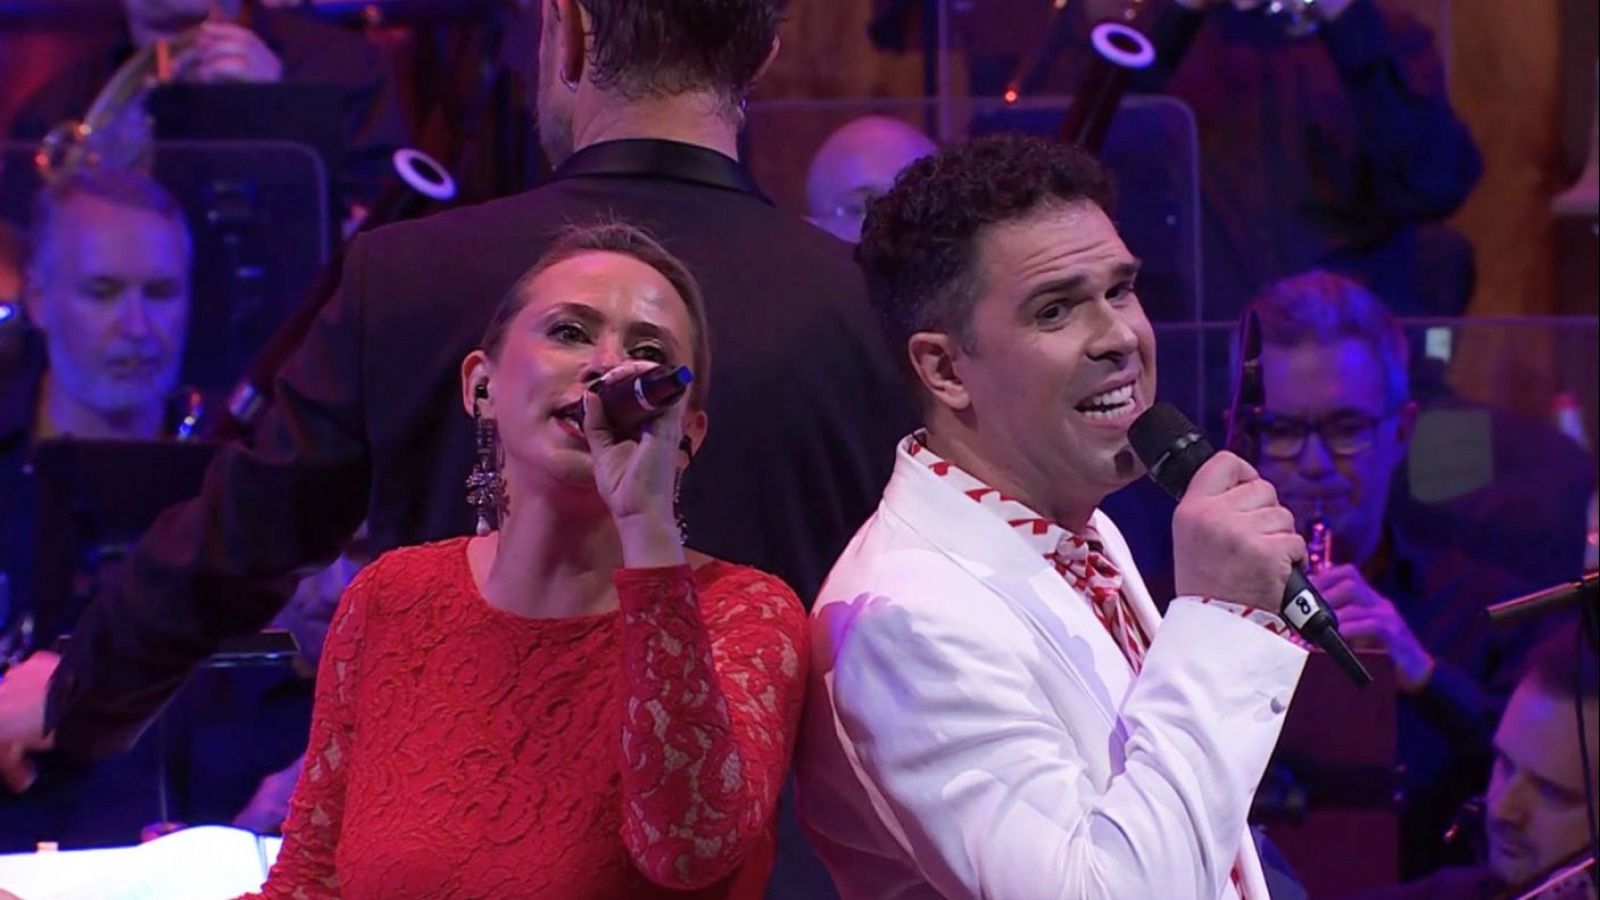 Lo que soy | Jose Ángel Silva y Alla Zaikina cantan "Yo solo quiero amar"